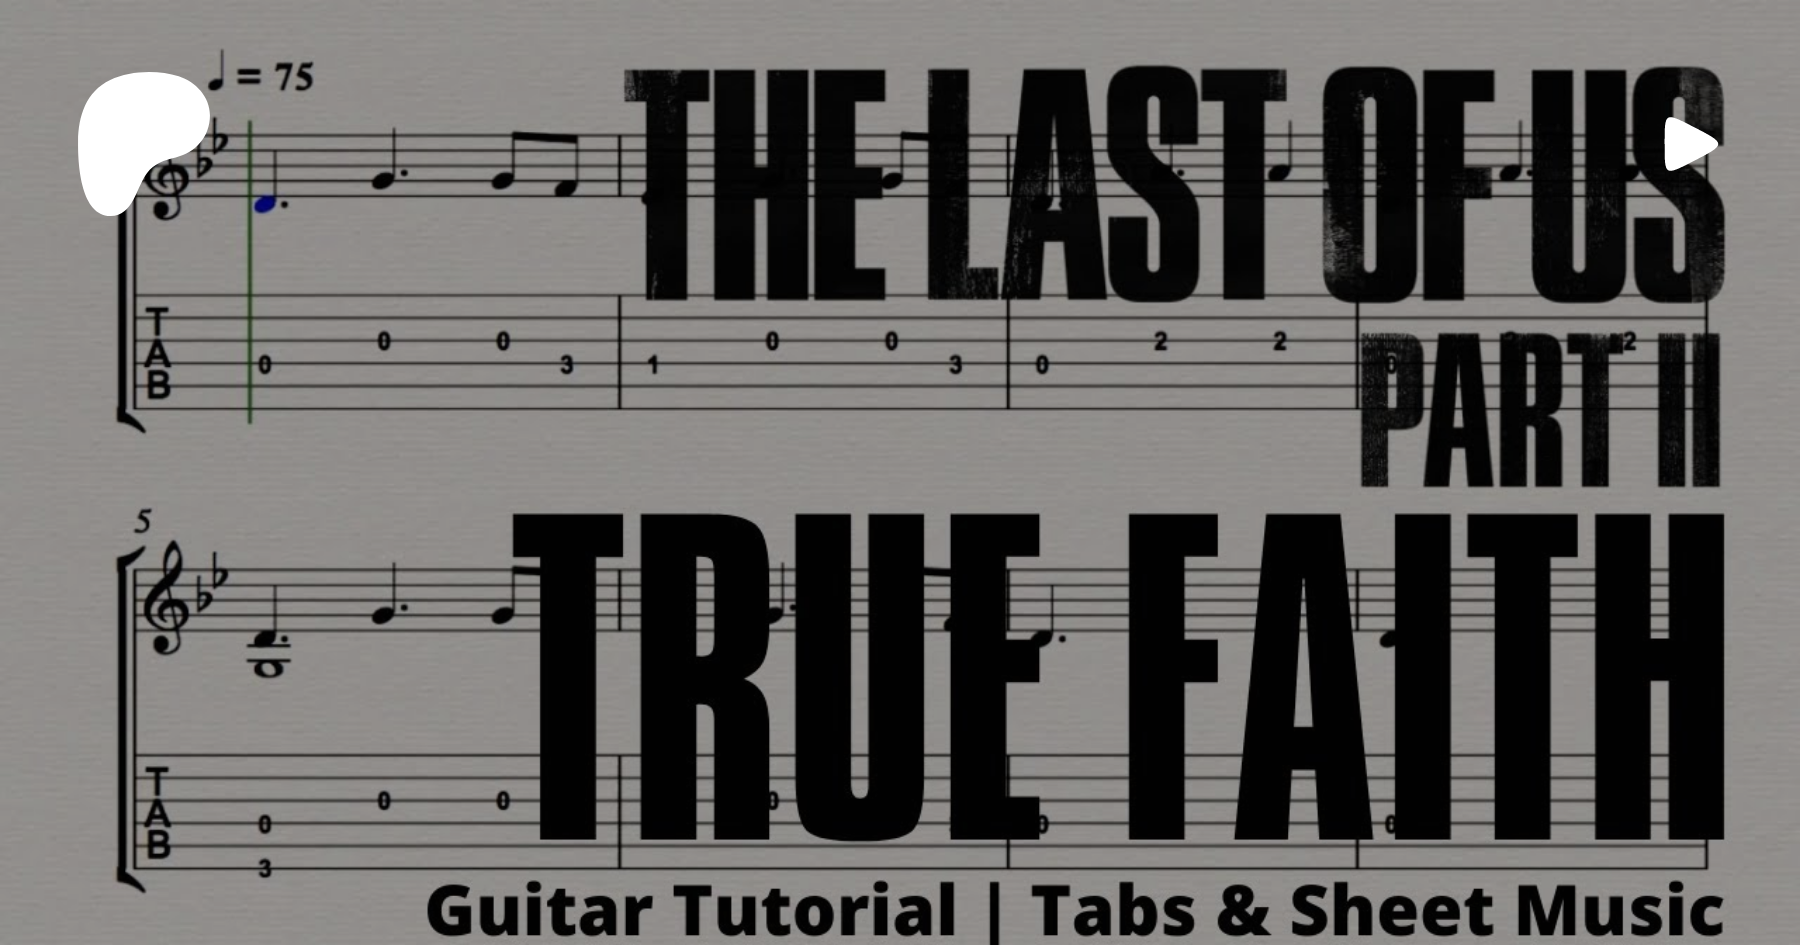 True faith new. Lotte Kestner - true Faith. True Faith аккорды. New order true Faith табы. The last of us 2 Guitar Tabs.